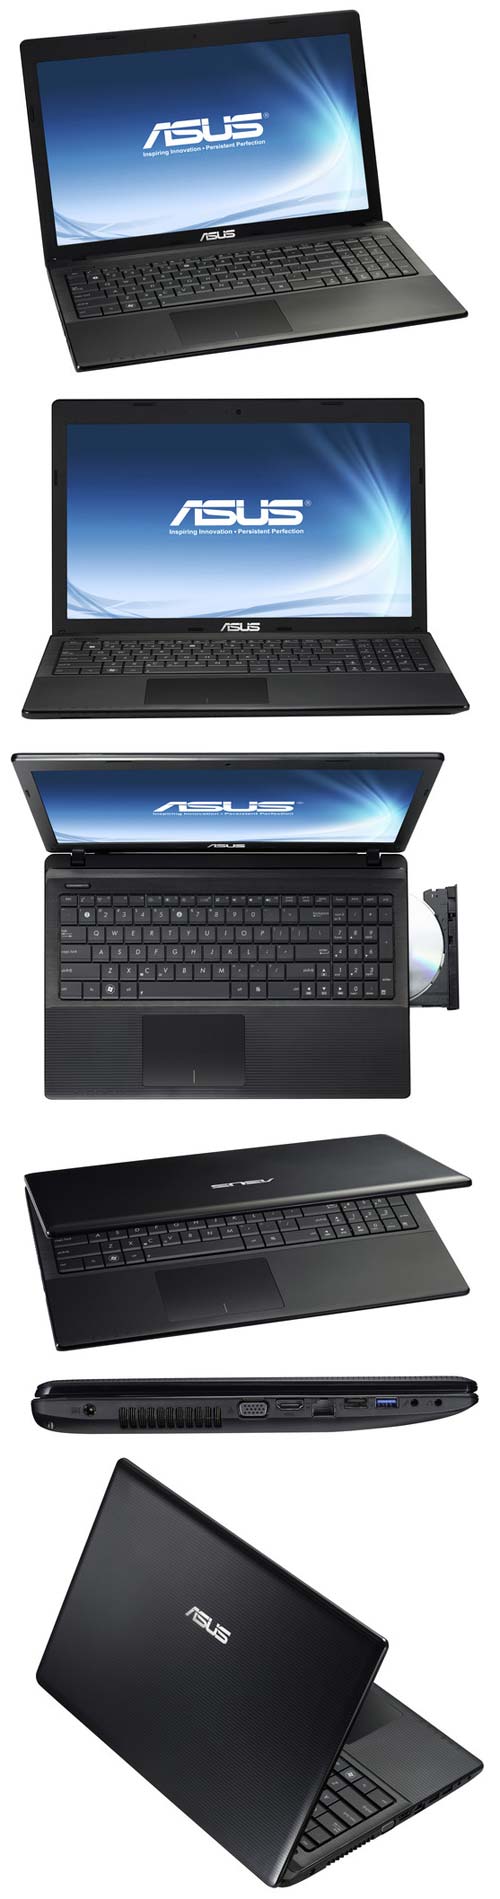 Новый ноутбук от ASUS - X55C-DS31